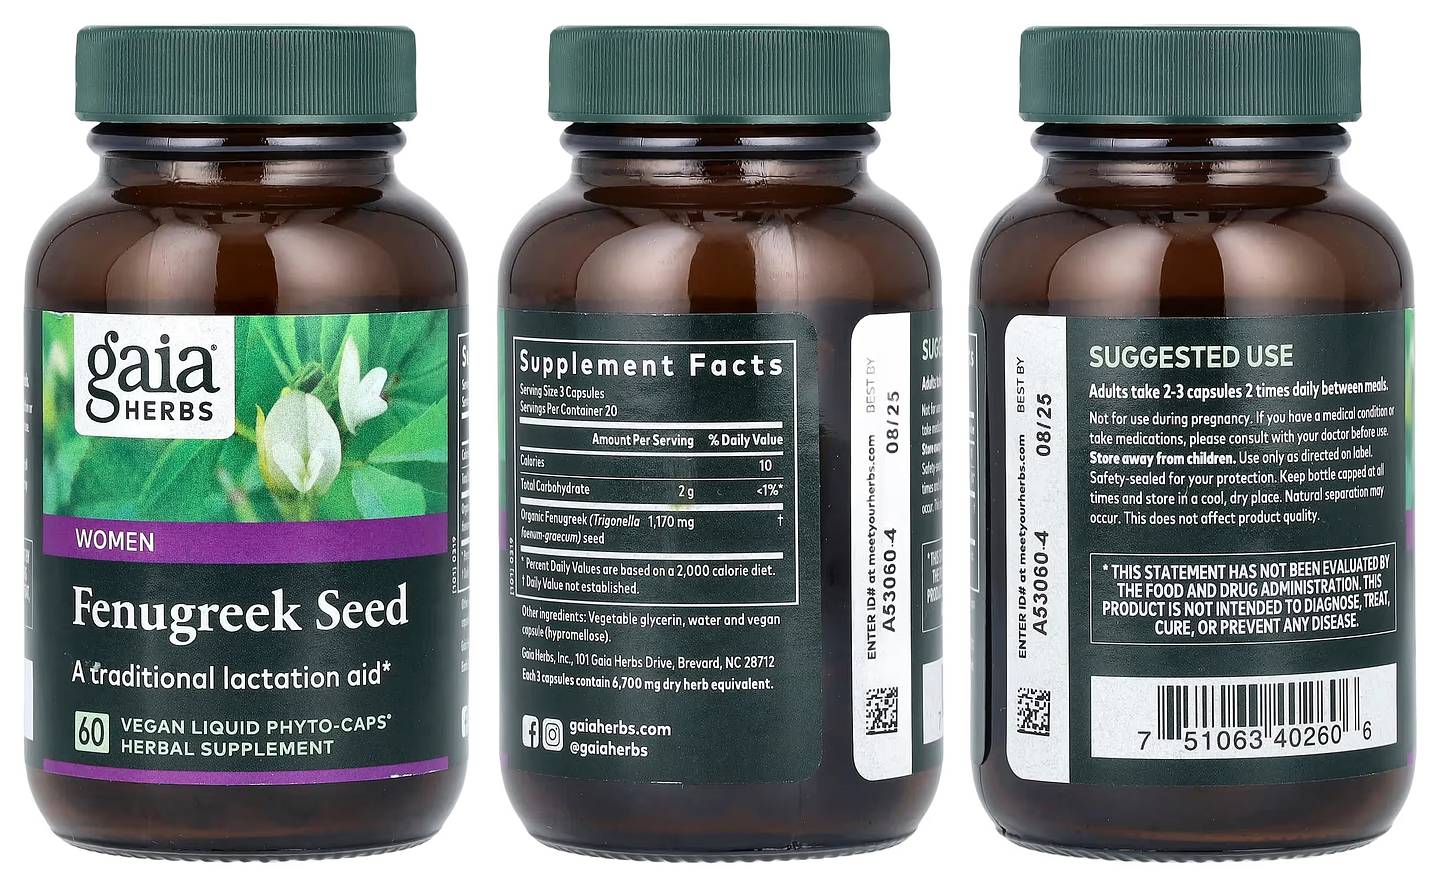 Gaia Herbs, Fenugreek Seed for Women packaging